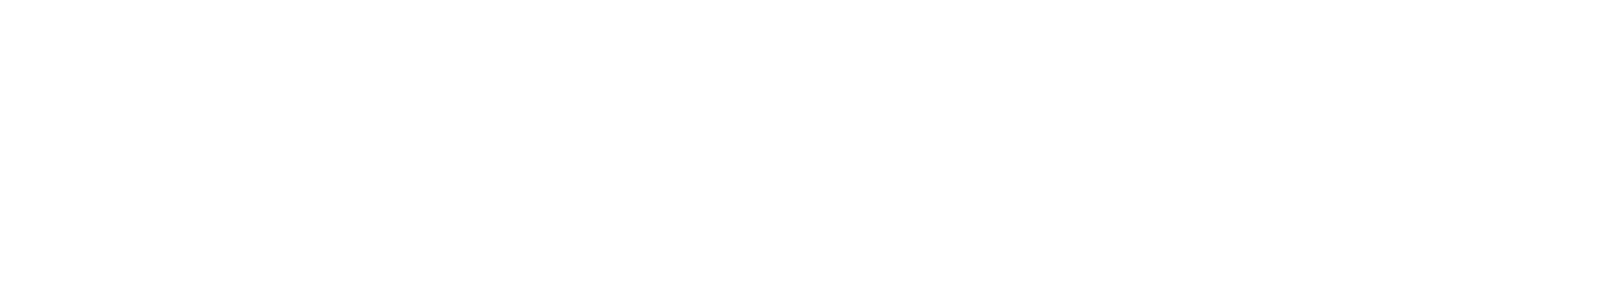 SeaChange logo large for dark backgrounds (transparent PNG)